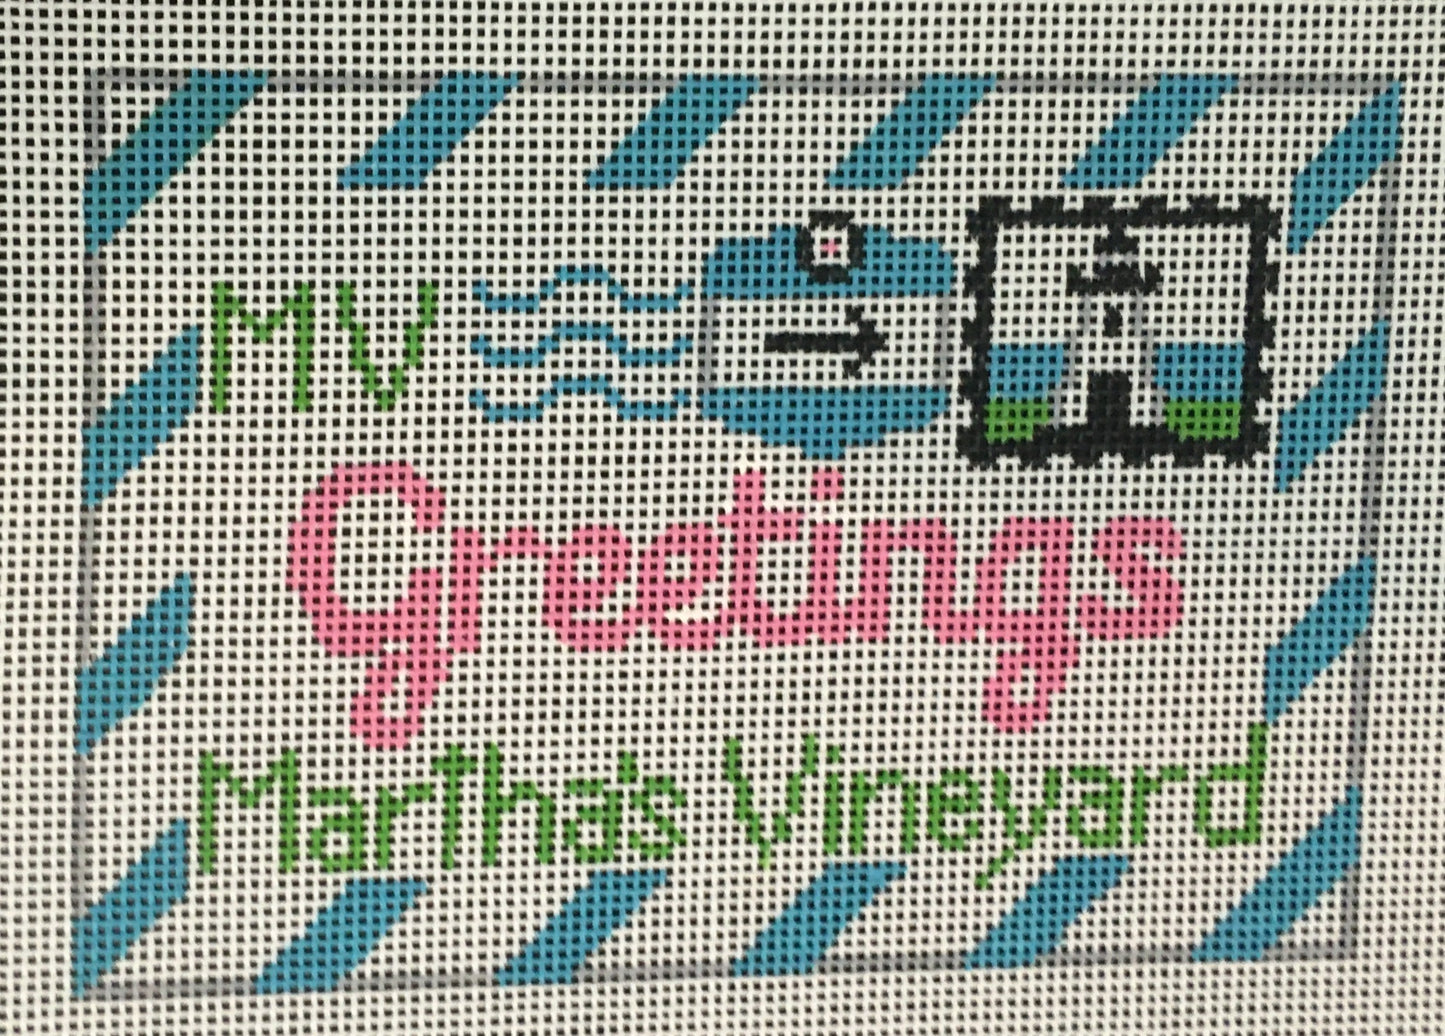 RD267 Martha's Vineyard Letter